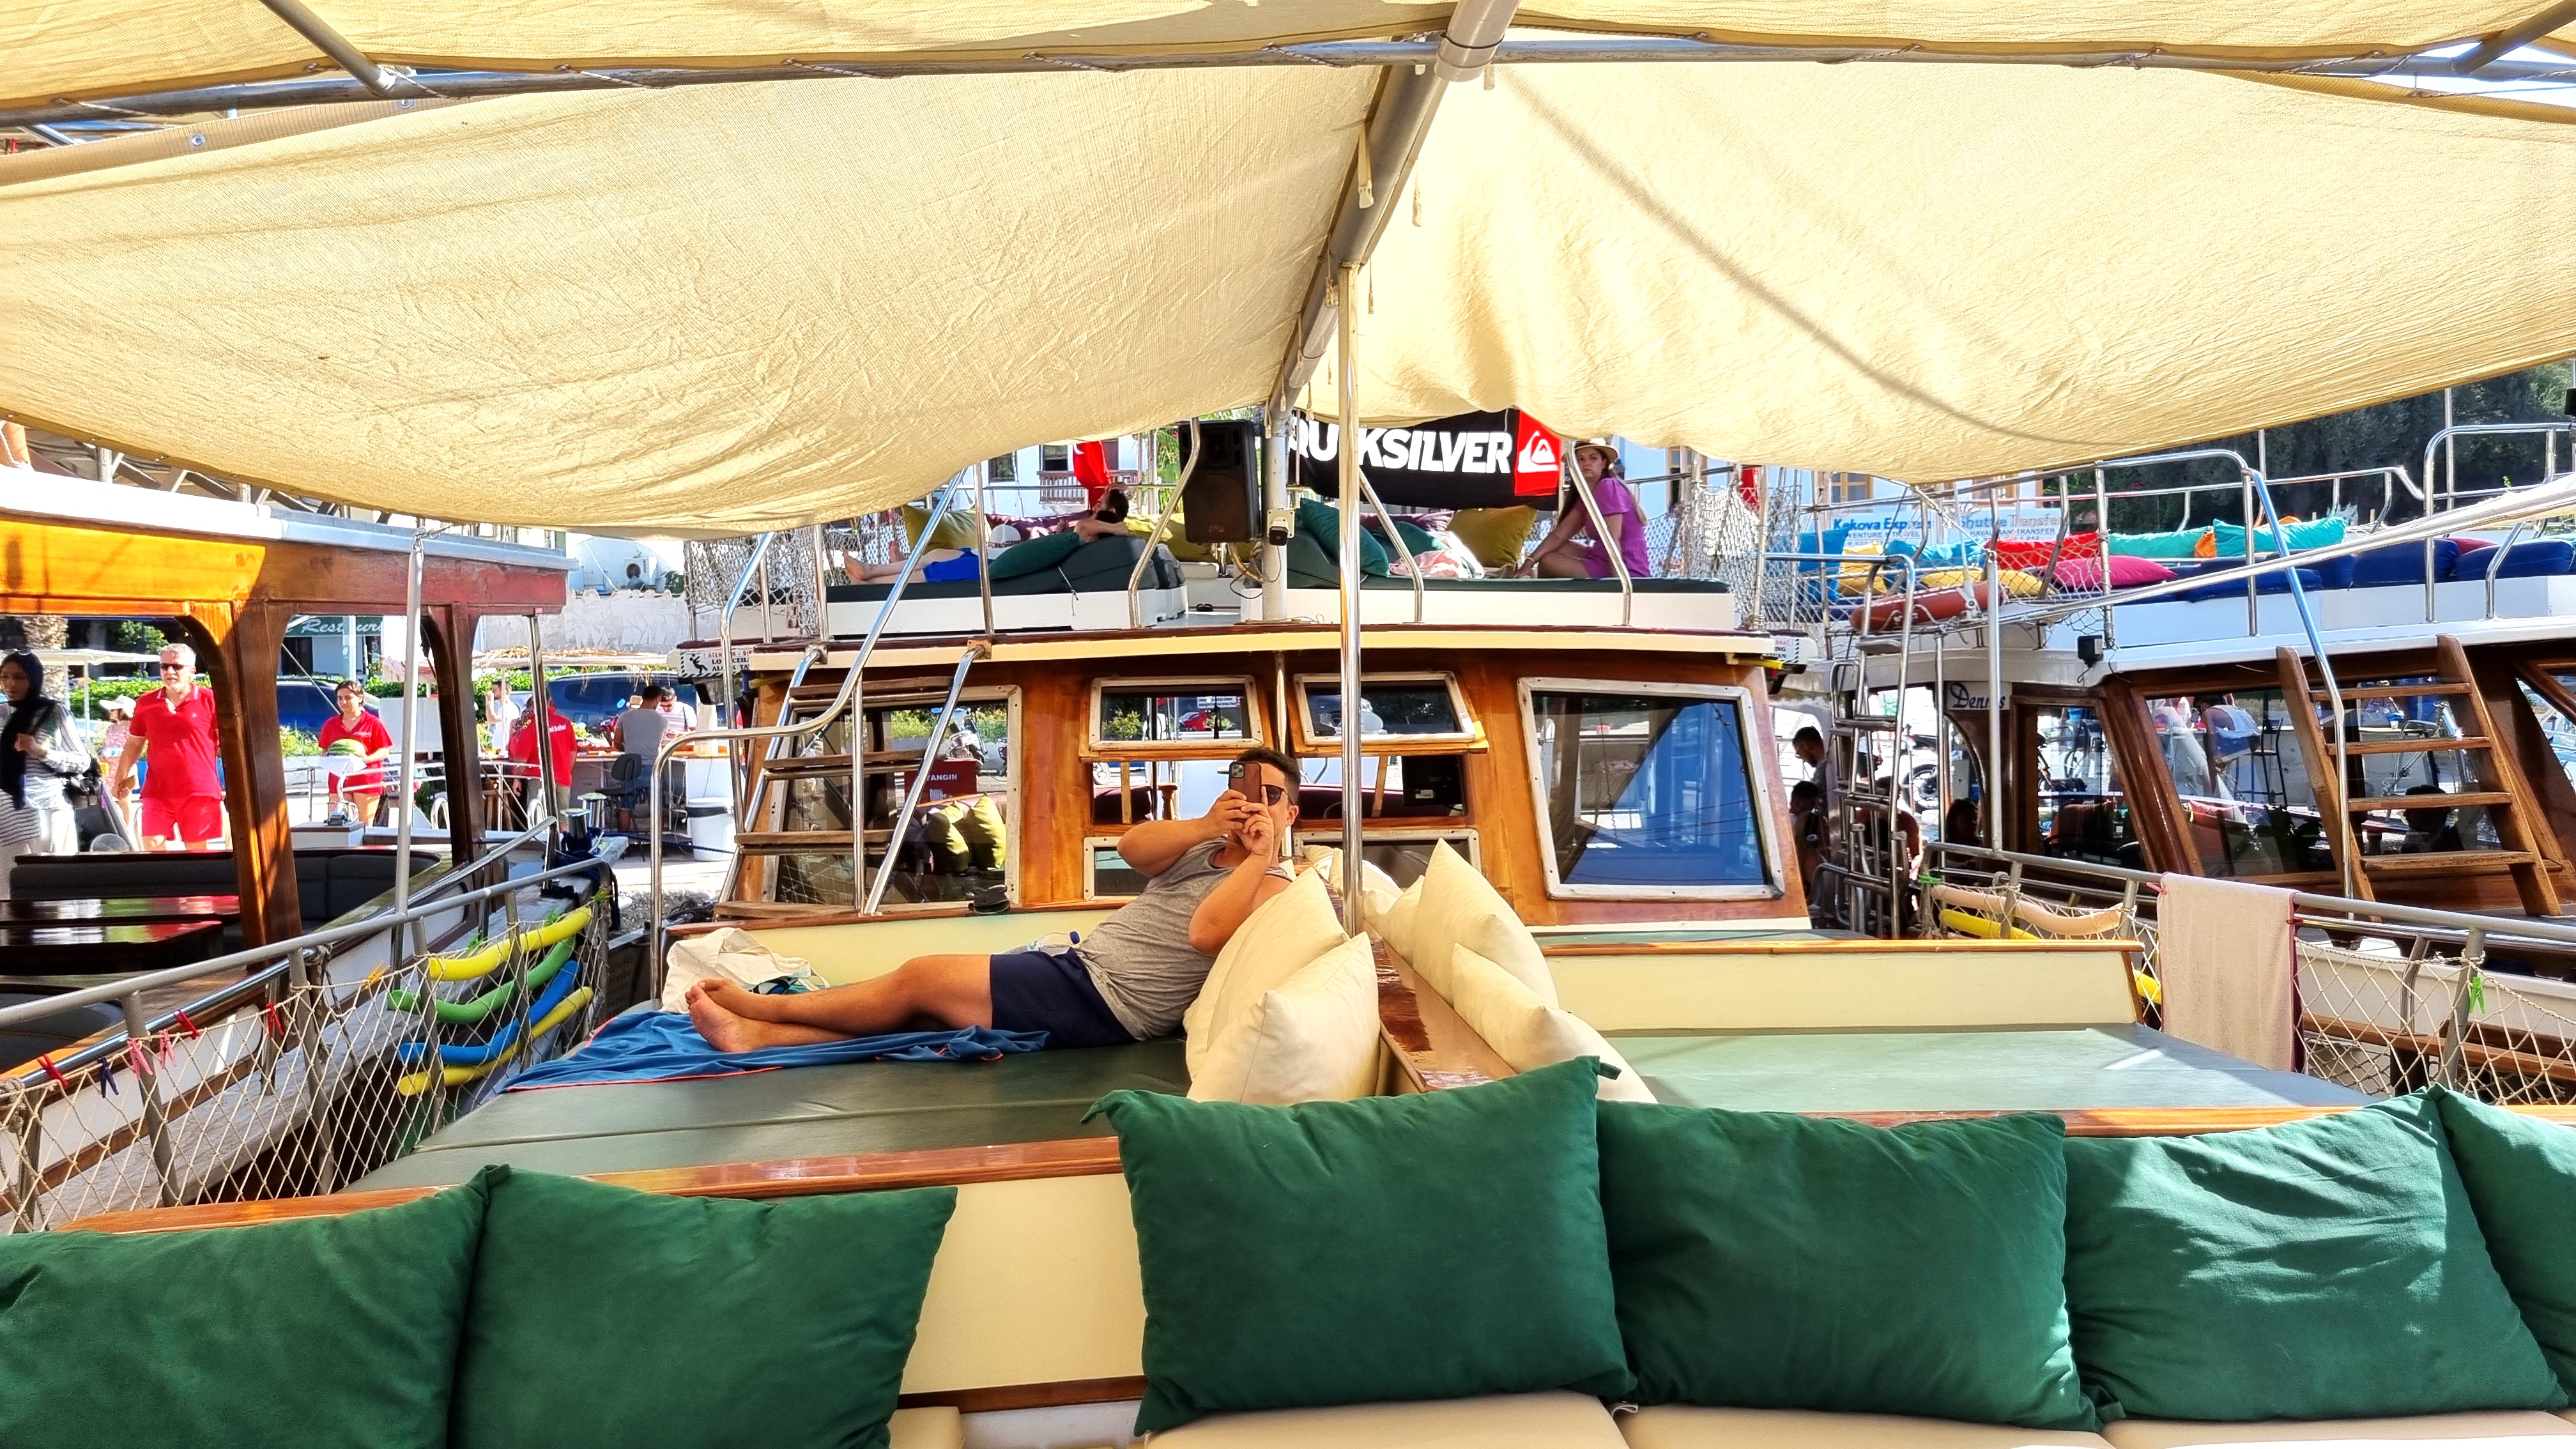 bateau bermuda boat excursion activite kas turquie